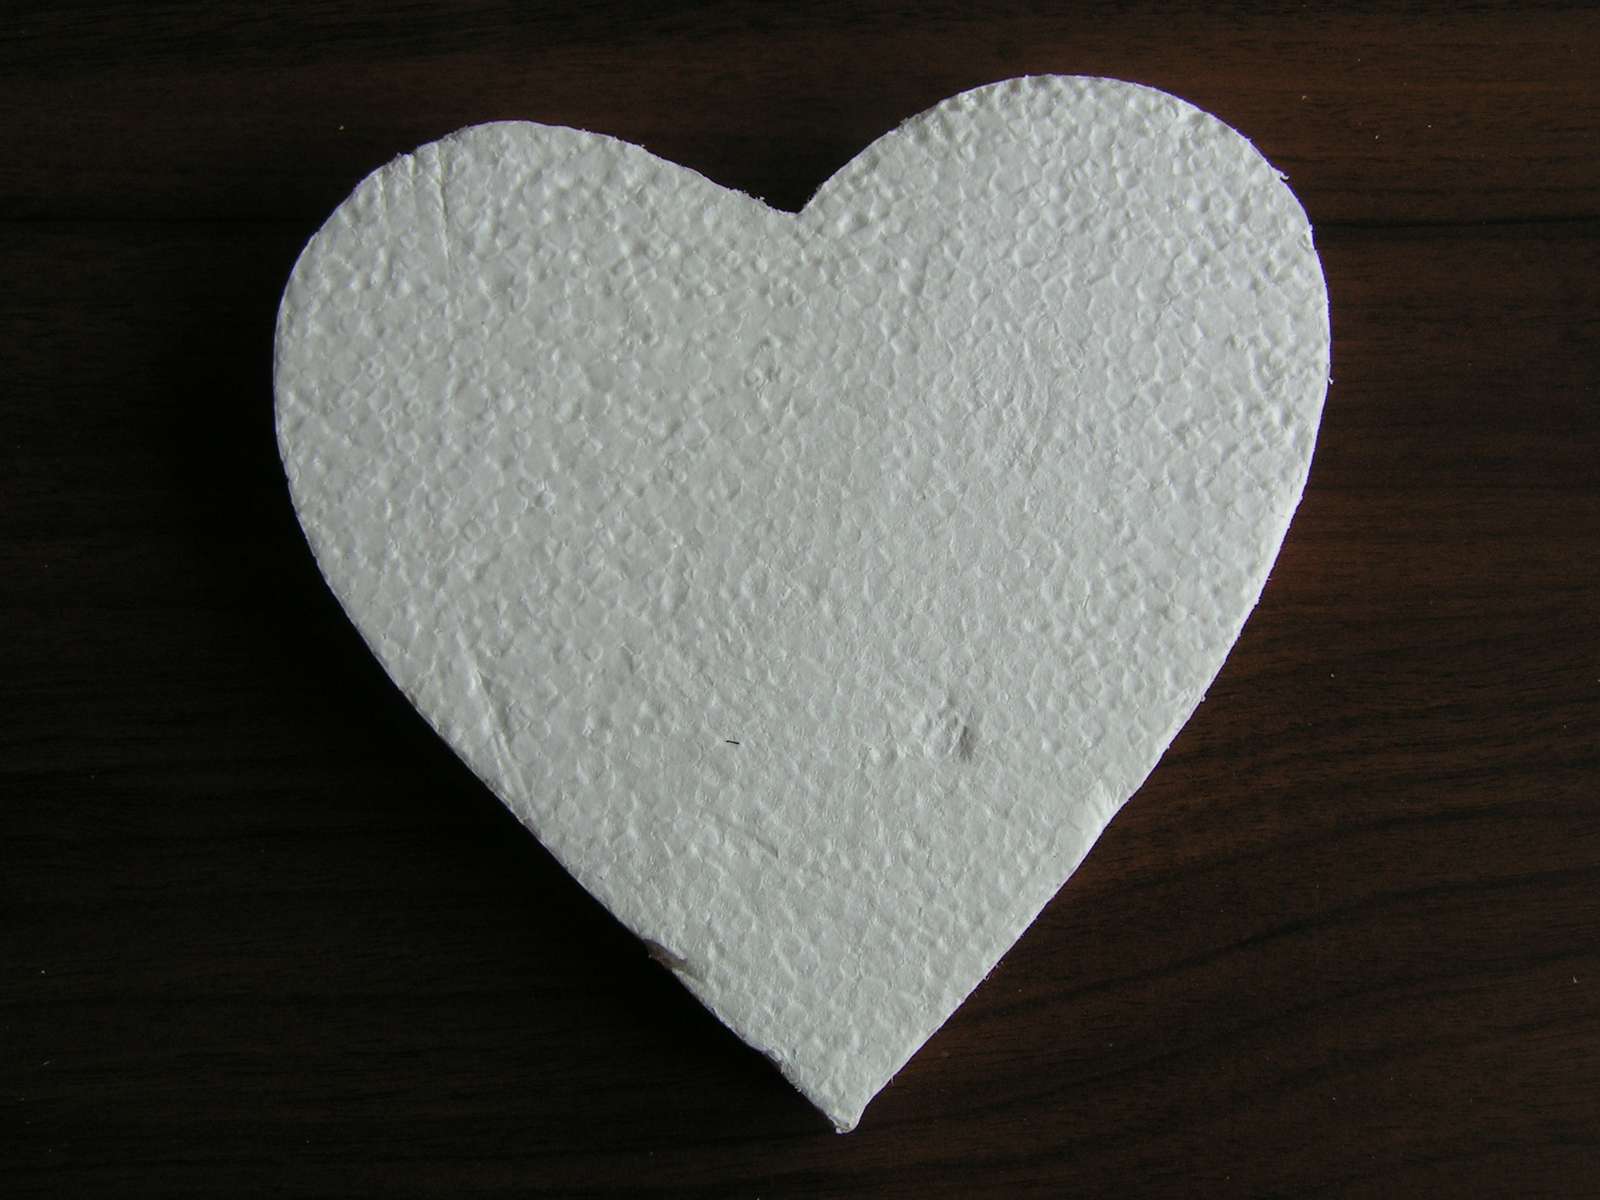 Polystyrenové srdce cca 15 cm - Obrázek č. 1